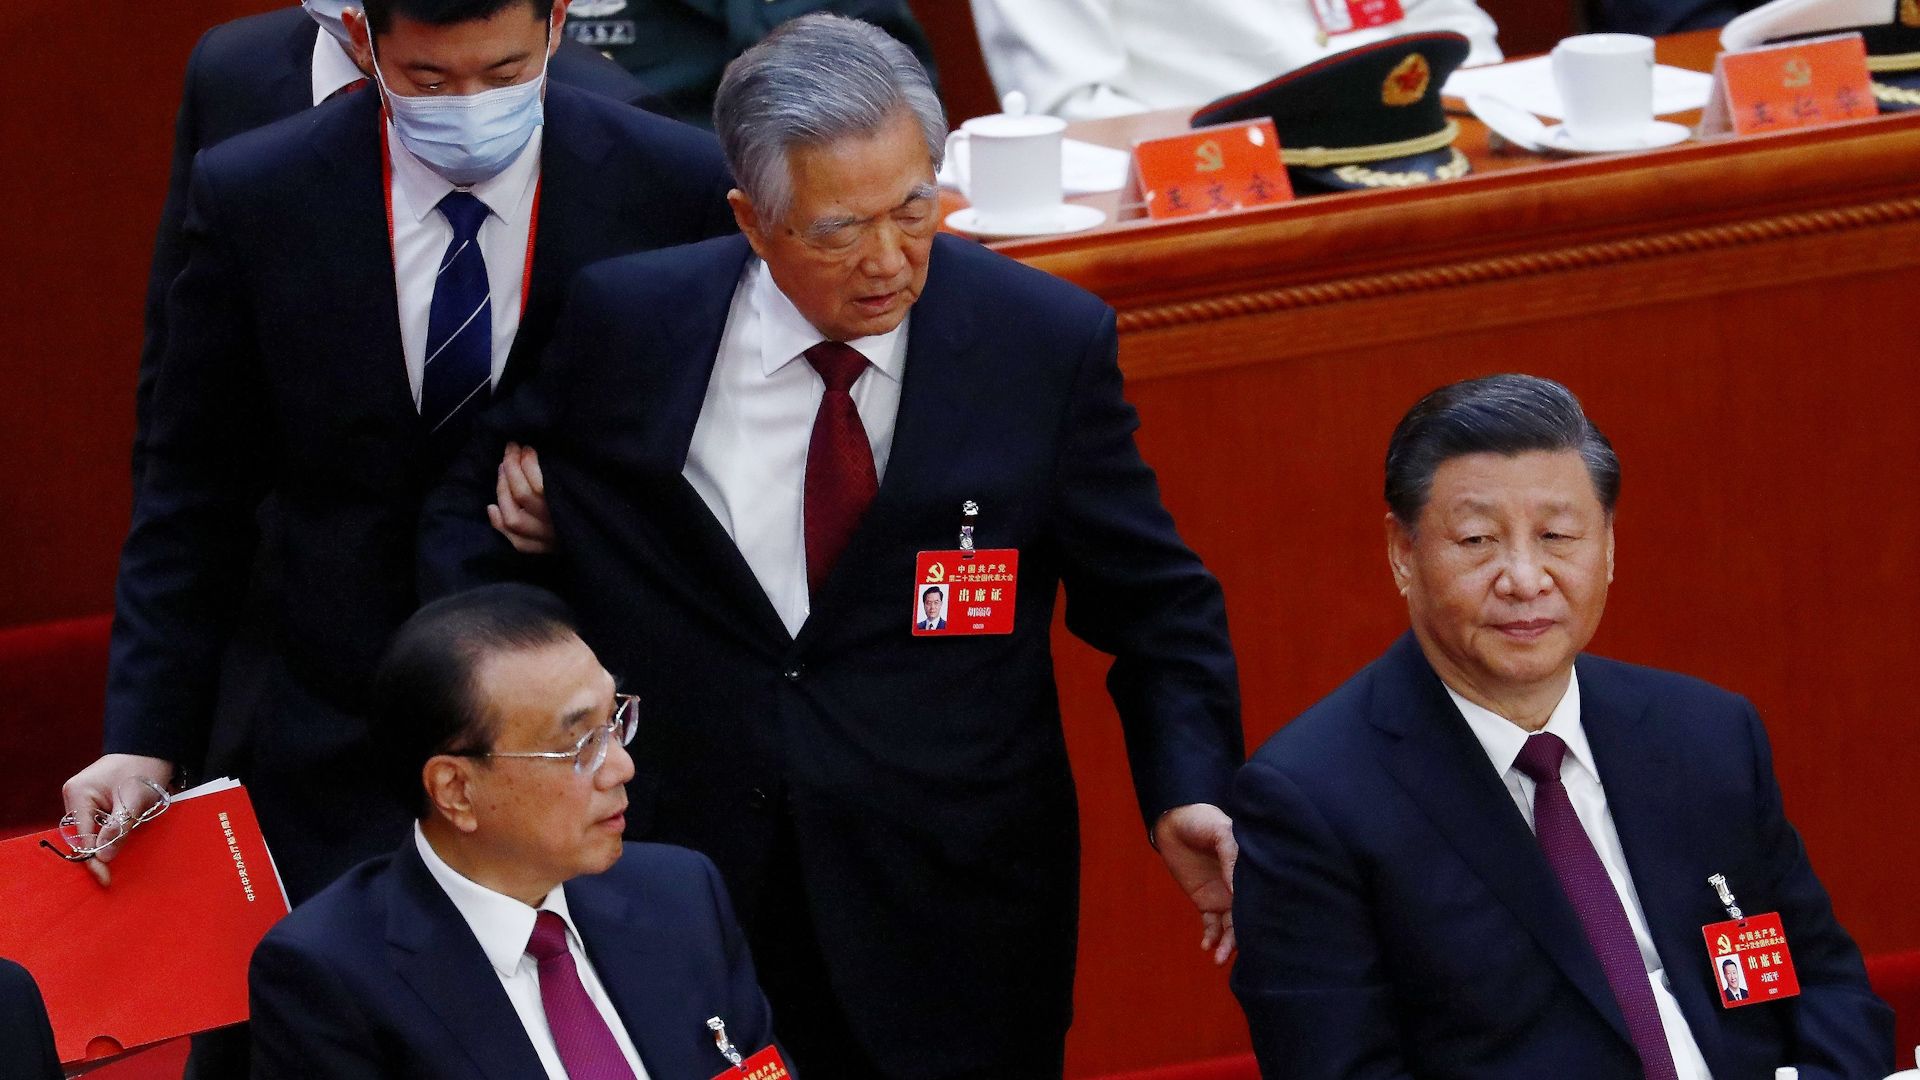 Fostul președinte chinez Ju Jintao este escortat de la Congresul PCC, sursă foto The Wall Street Journal